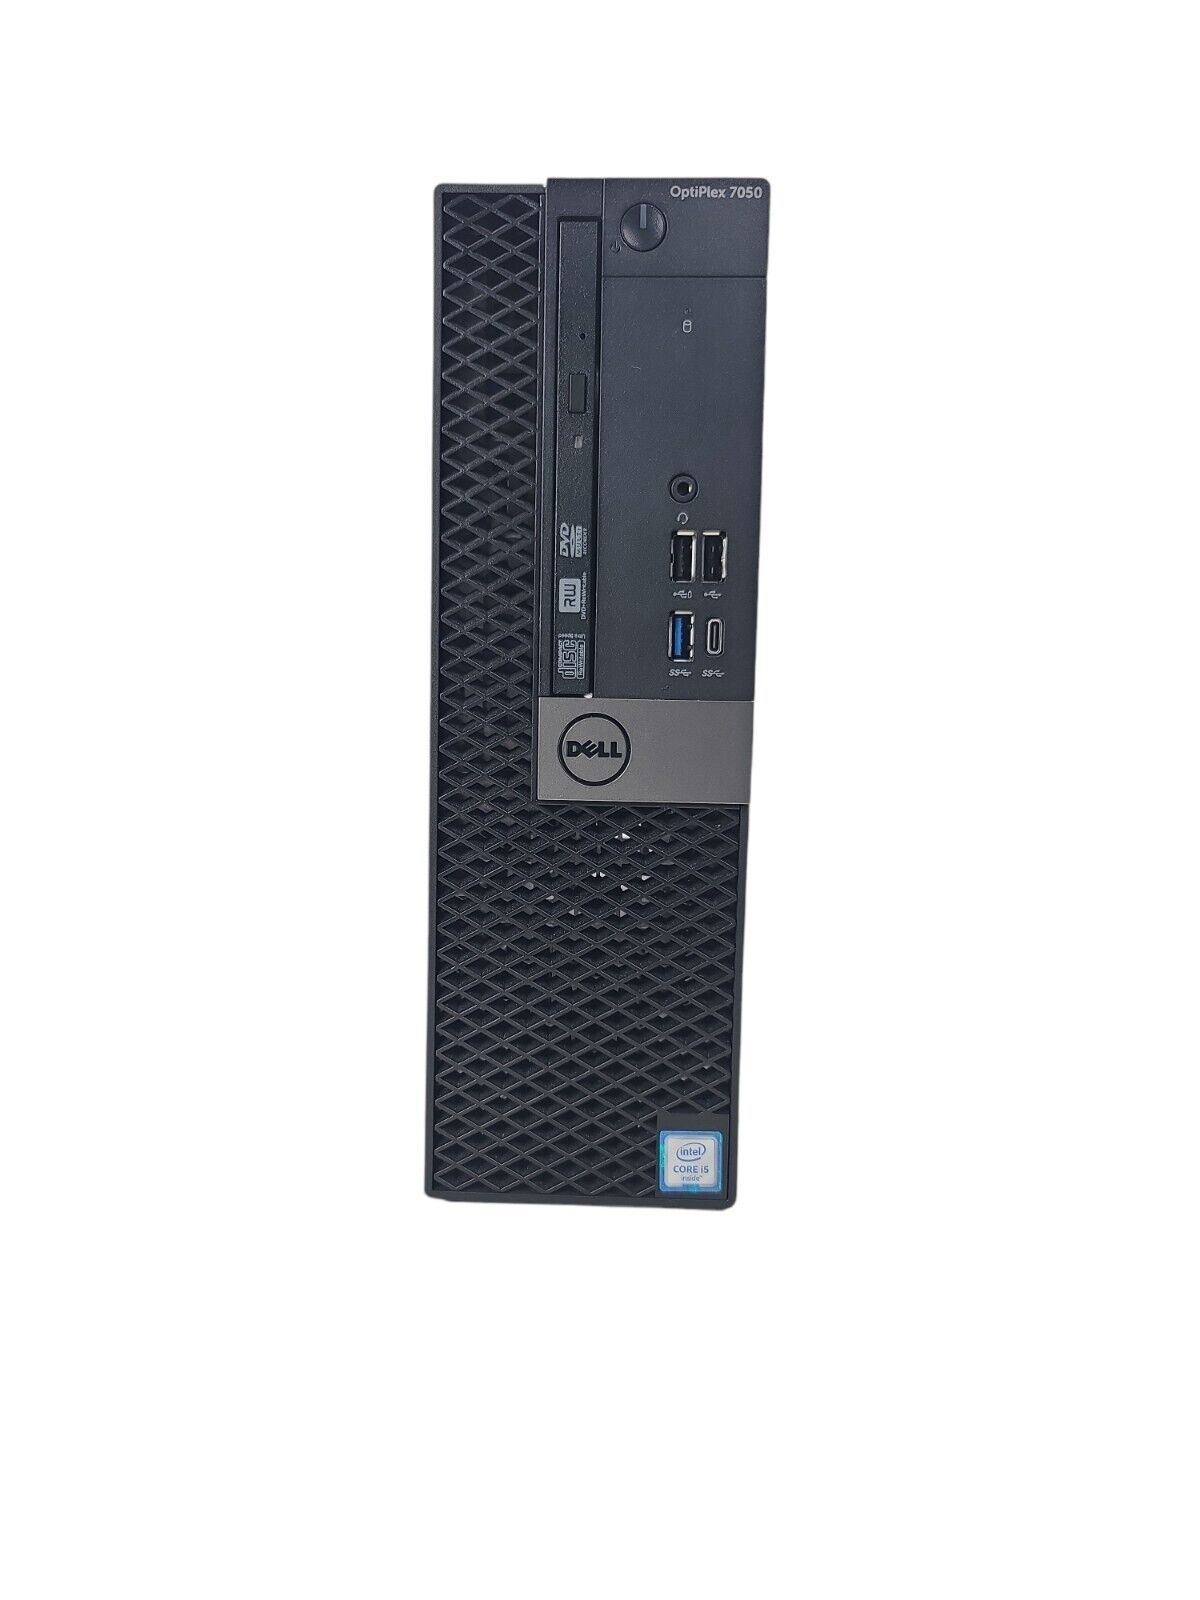 Dell OptiPlex 7040 Intel core i7-6700@3.40GHz 1TB HDD 8 GB RAM Windows 10 Pro